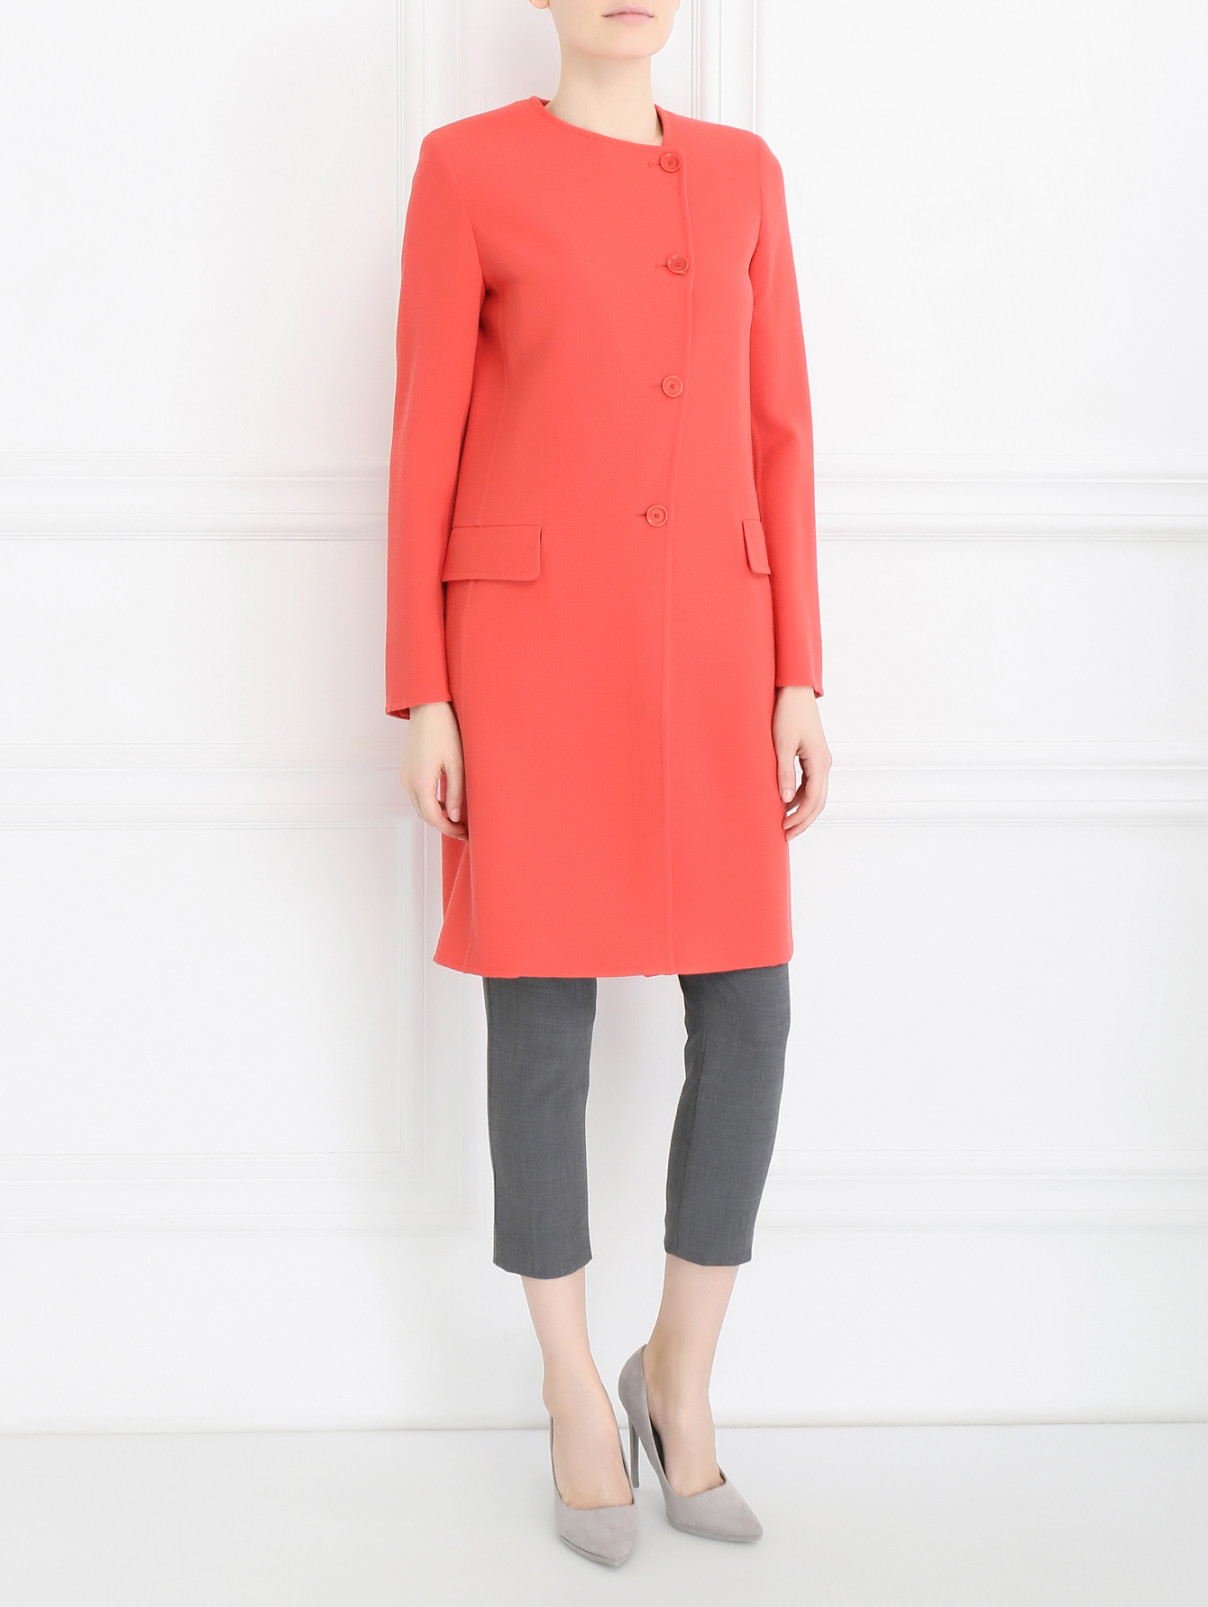 Пальто из шерсти Max Mara  –  Модель Общий вид  – Цвет:  Красный